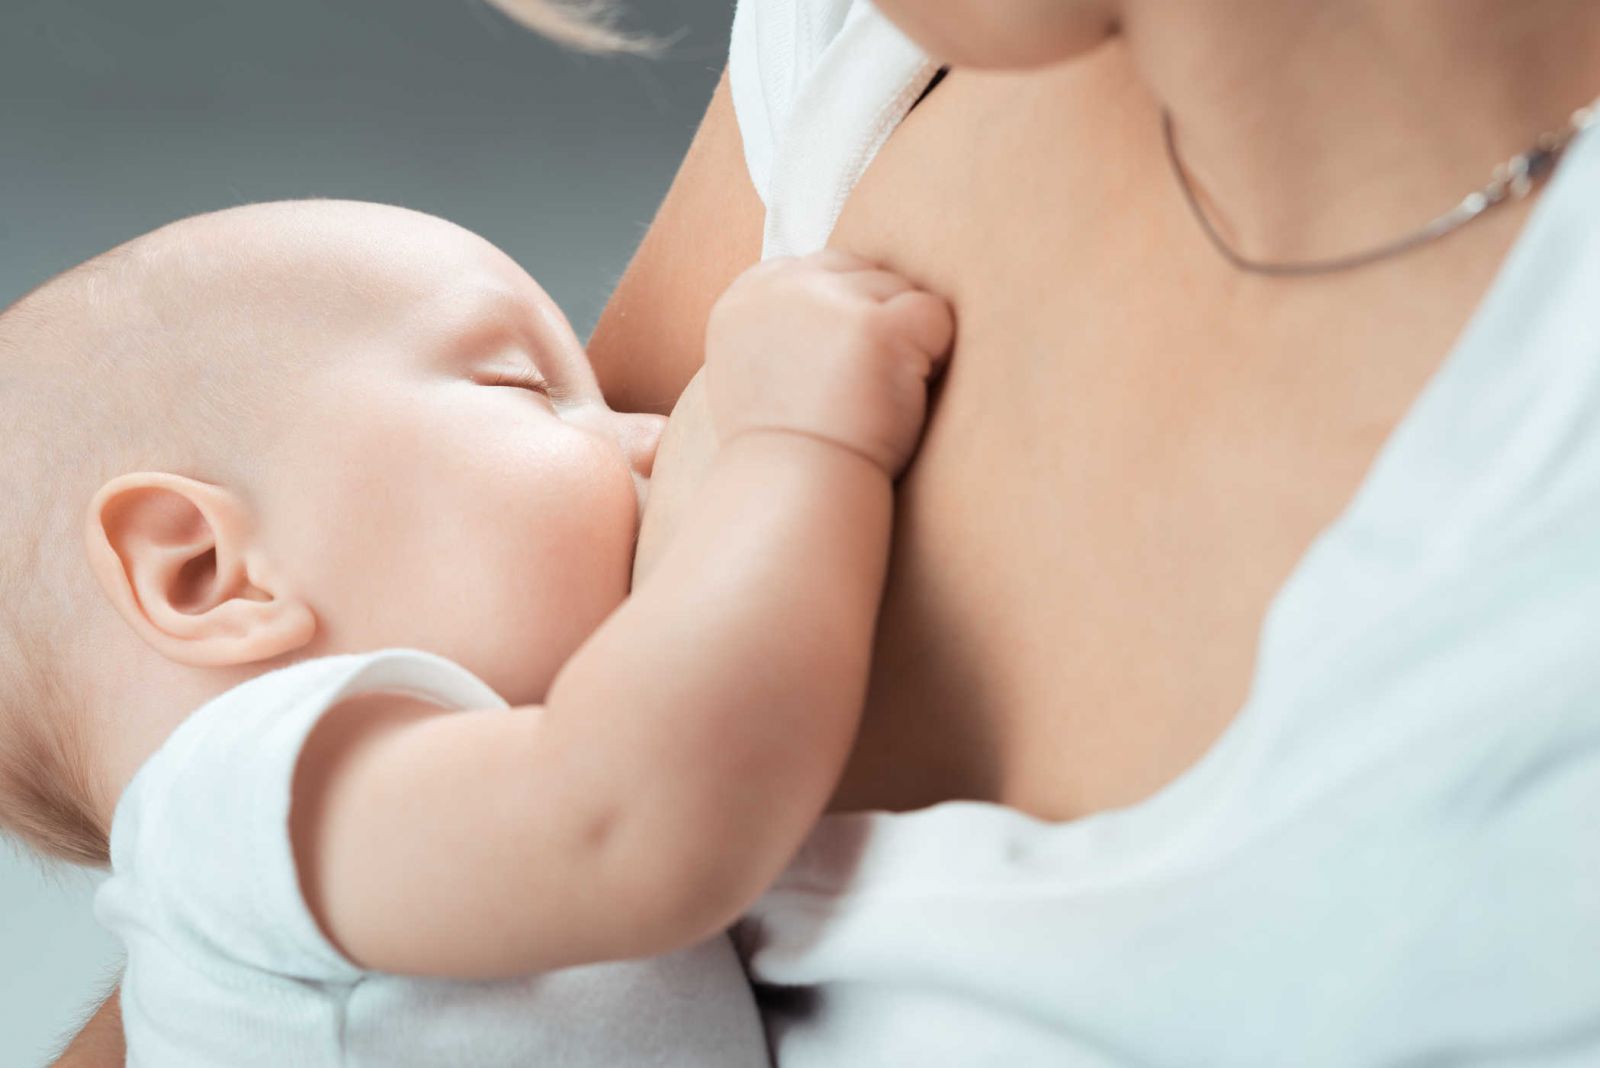  Trẻ có thể bắt đầu cai sữa mẹ từ 24 tháng tuổi trở lên